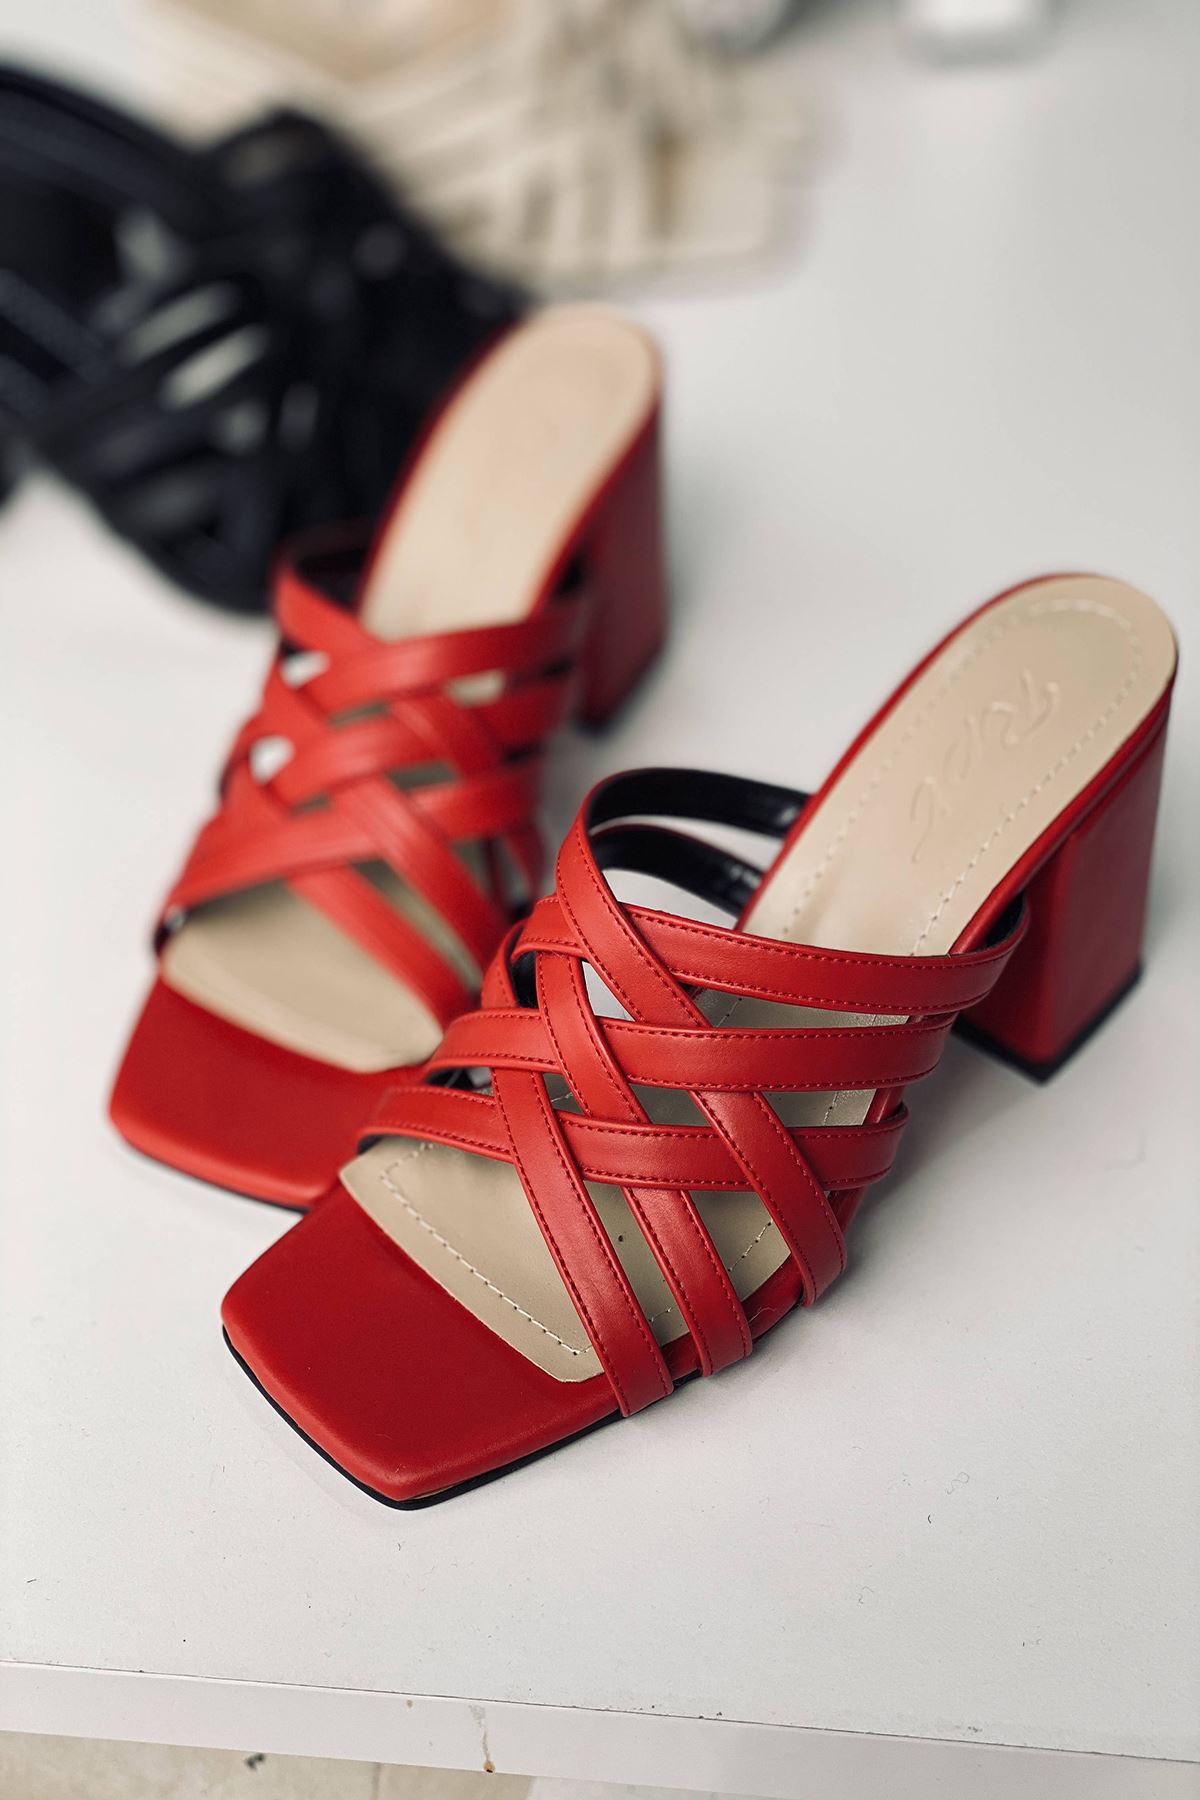 Y926 Kırmızı Deri Topuklu Ayakkabı